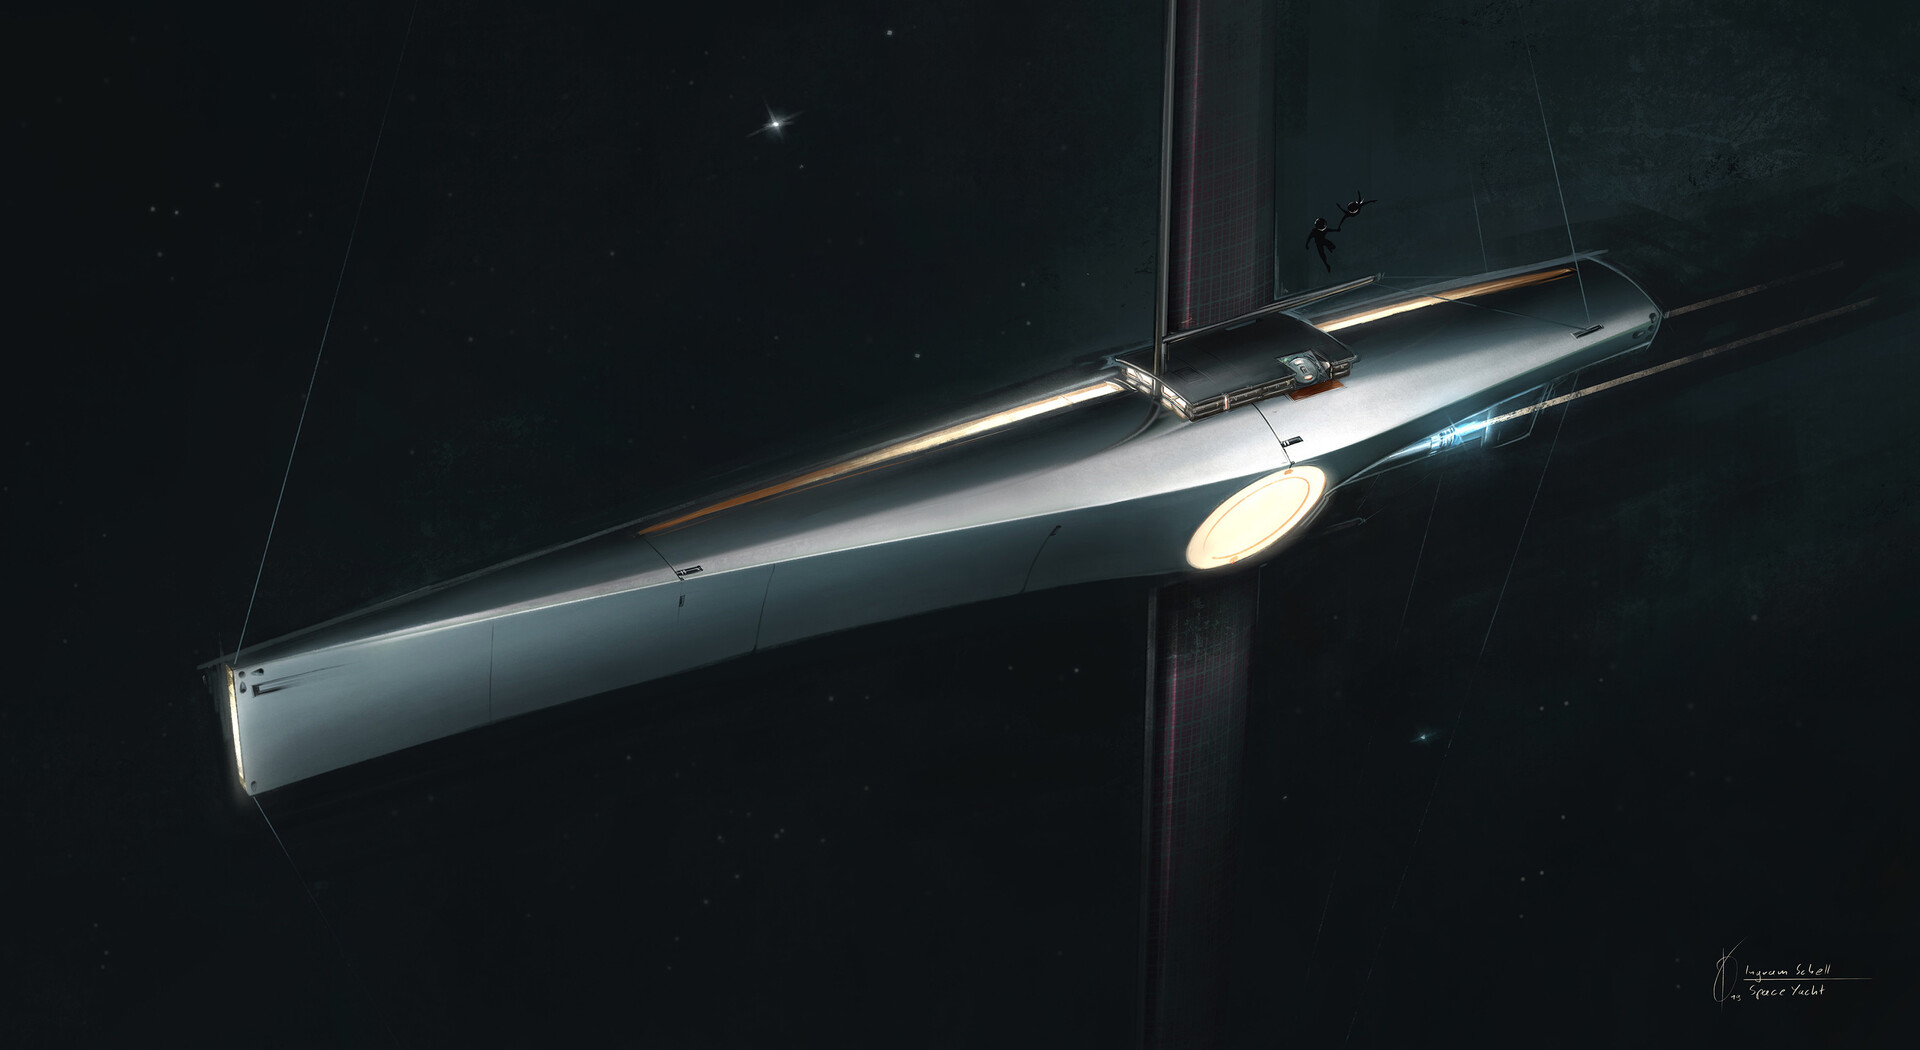 ingram-schell-spaceyacht-render-001-3k.jpg